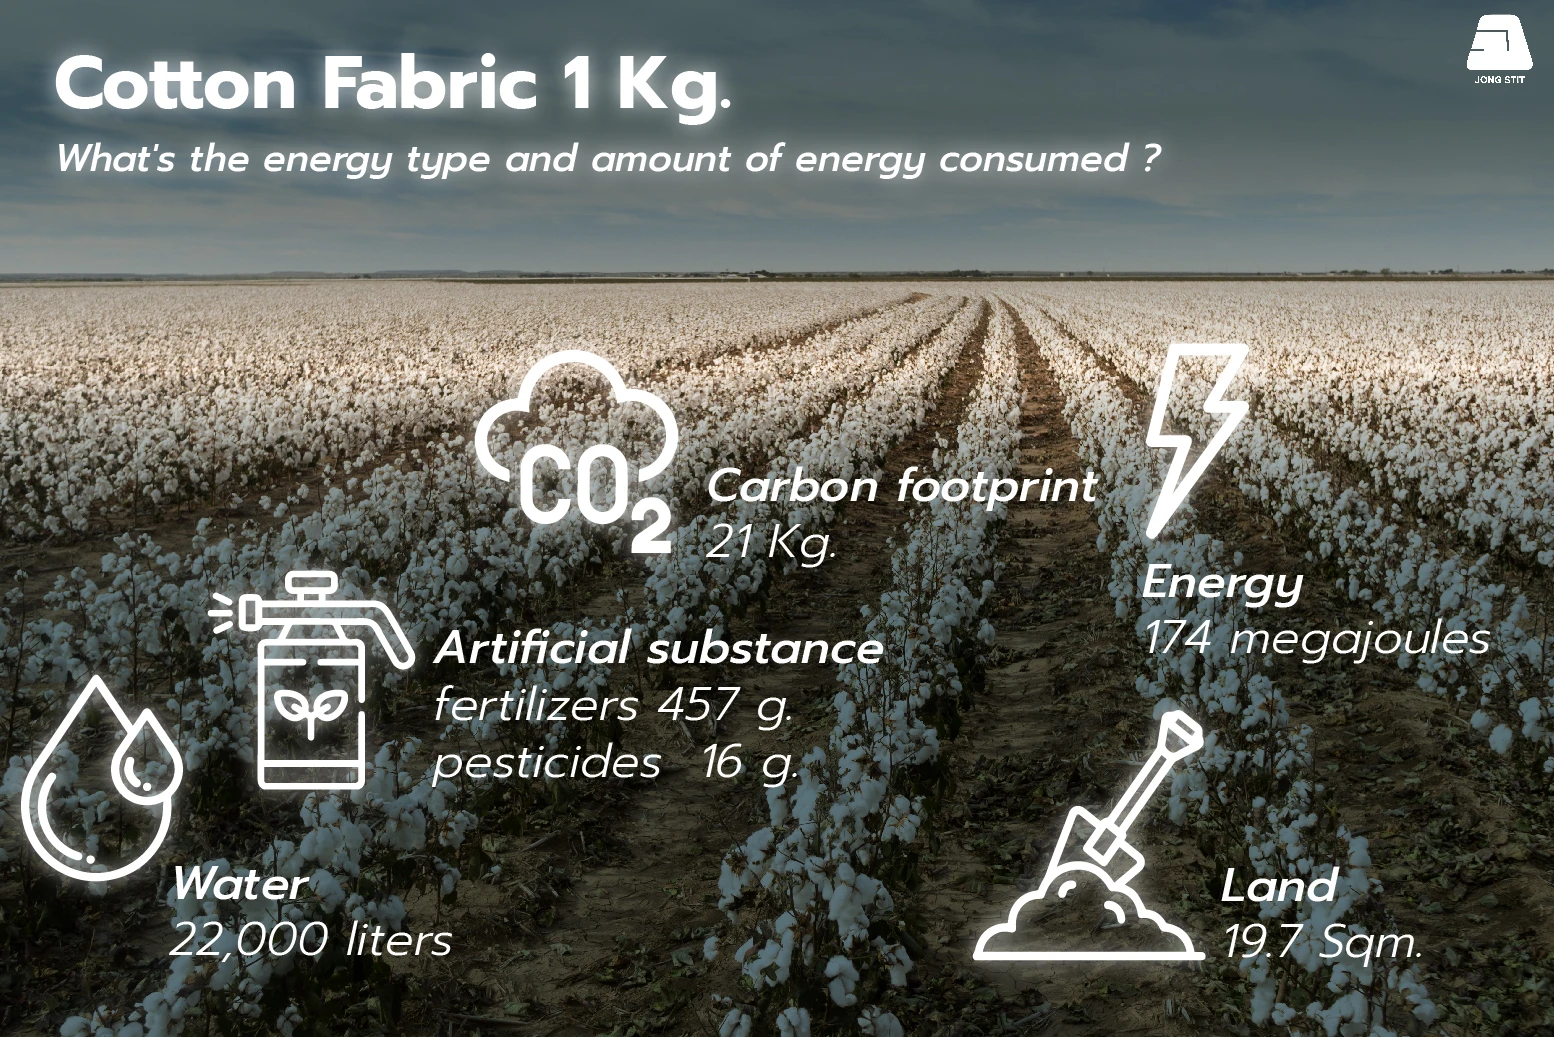 Kilogram of Cotton resources consumption